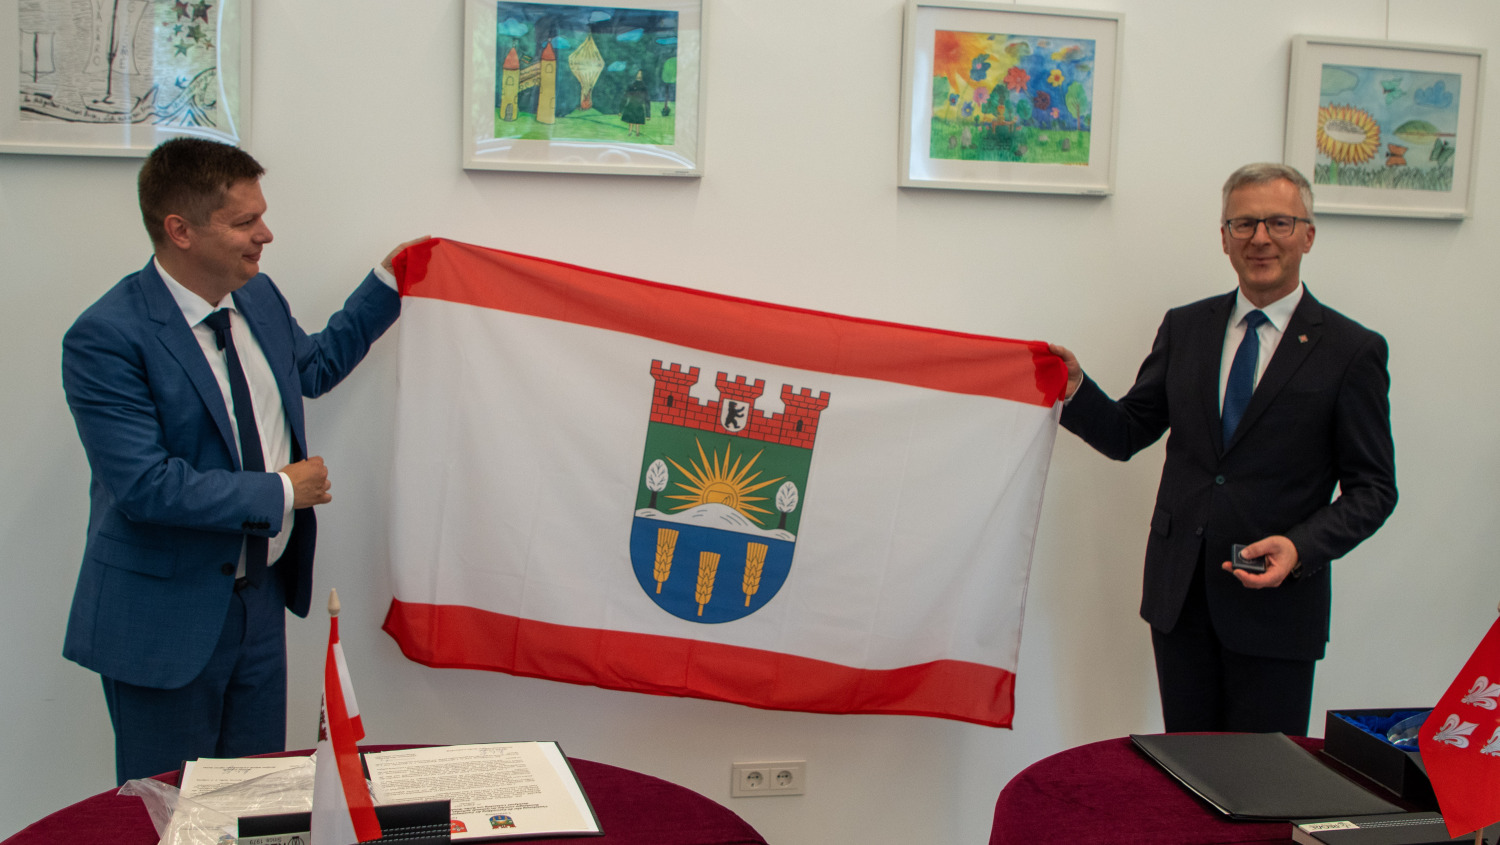 Bezirksbürgermeister Martin Schaefer und der Bürgermeister der Stadt Jurbarkas, Skirmantas Mockevičius, halten eine Fahne mit dem Wappen von Lichtenberg hoch.